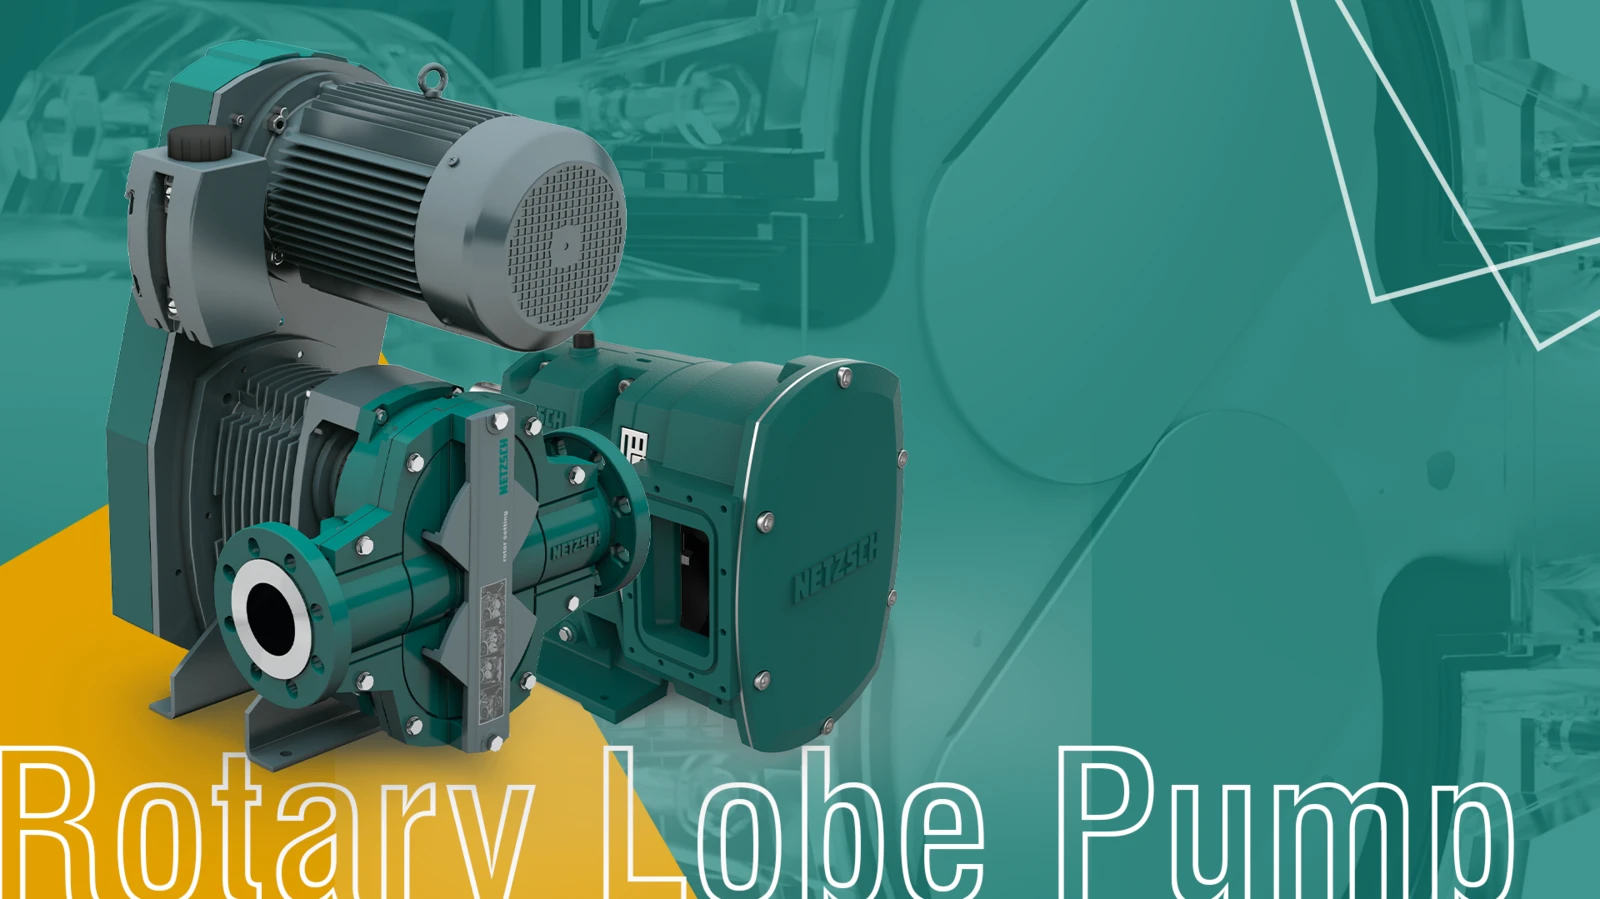 Rotary Lobe Pump, NETZSCH, Pumps, Systems